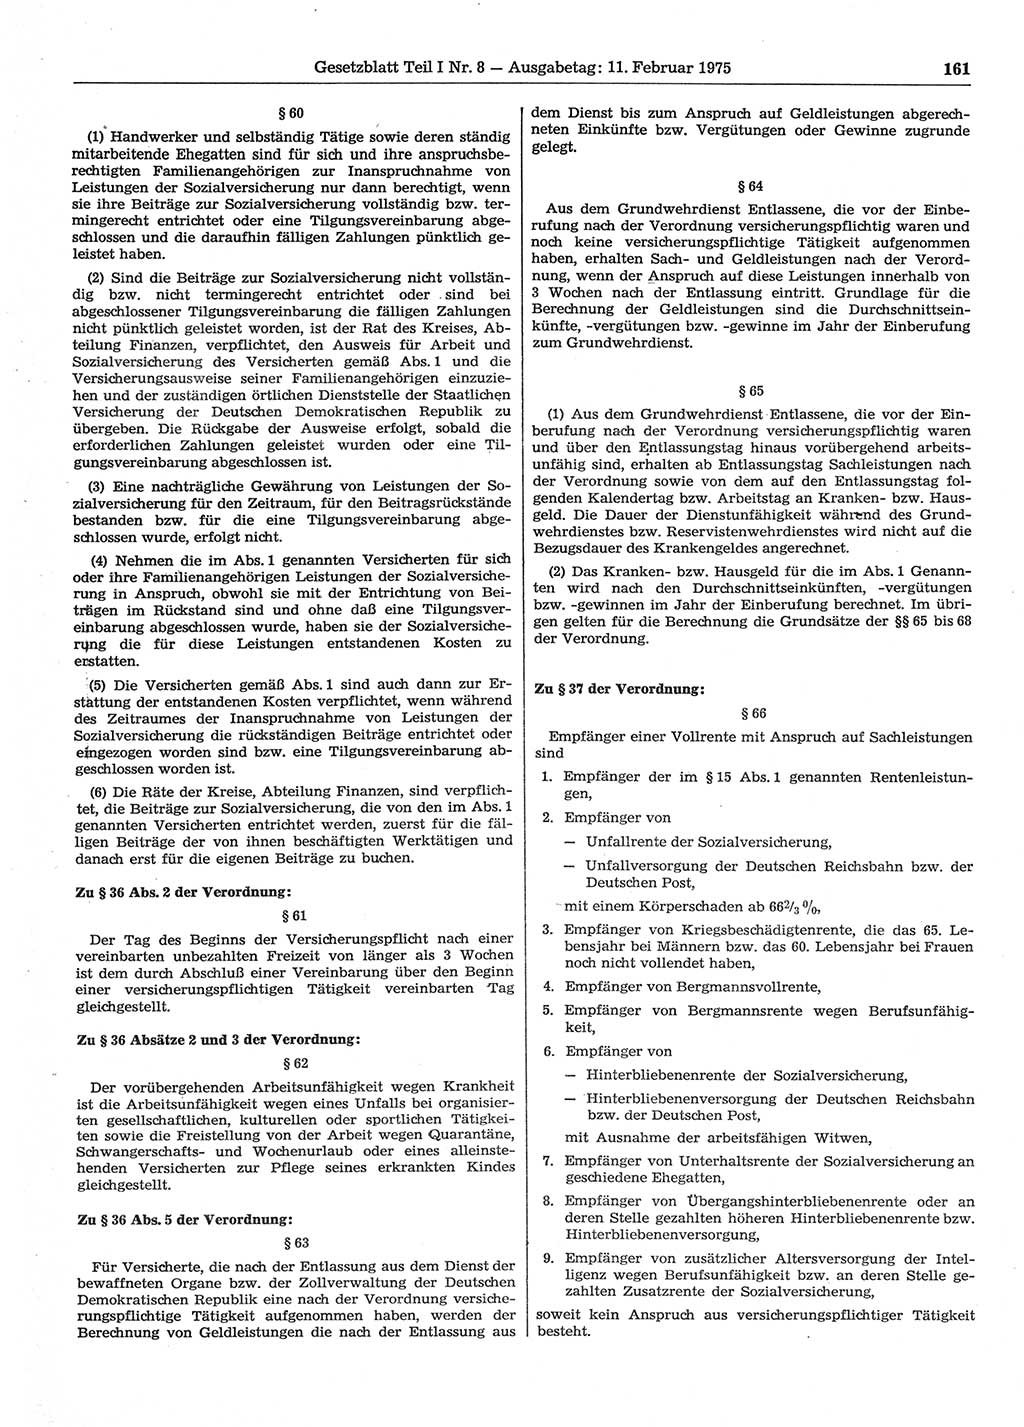 Gesetzblatt (GBl.) der Deutschen Demokratischen Republik (DDR) Teil Ⅰ 1975, Seite 161 (GBl. DDR Ⅰ 1975, S. 161)